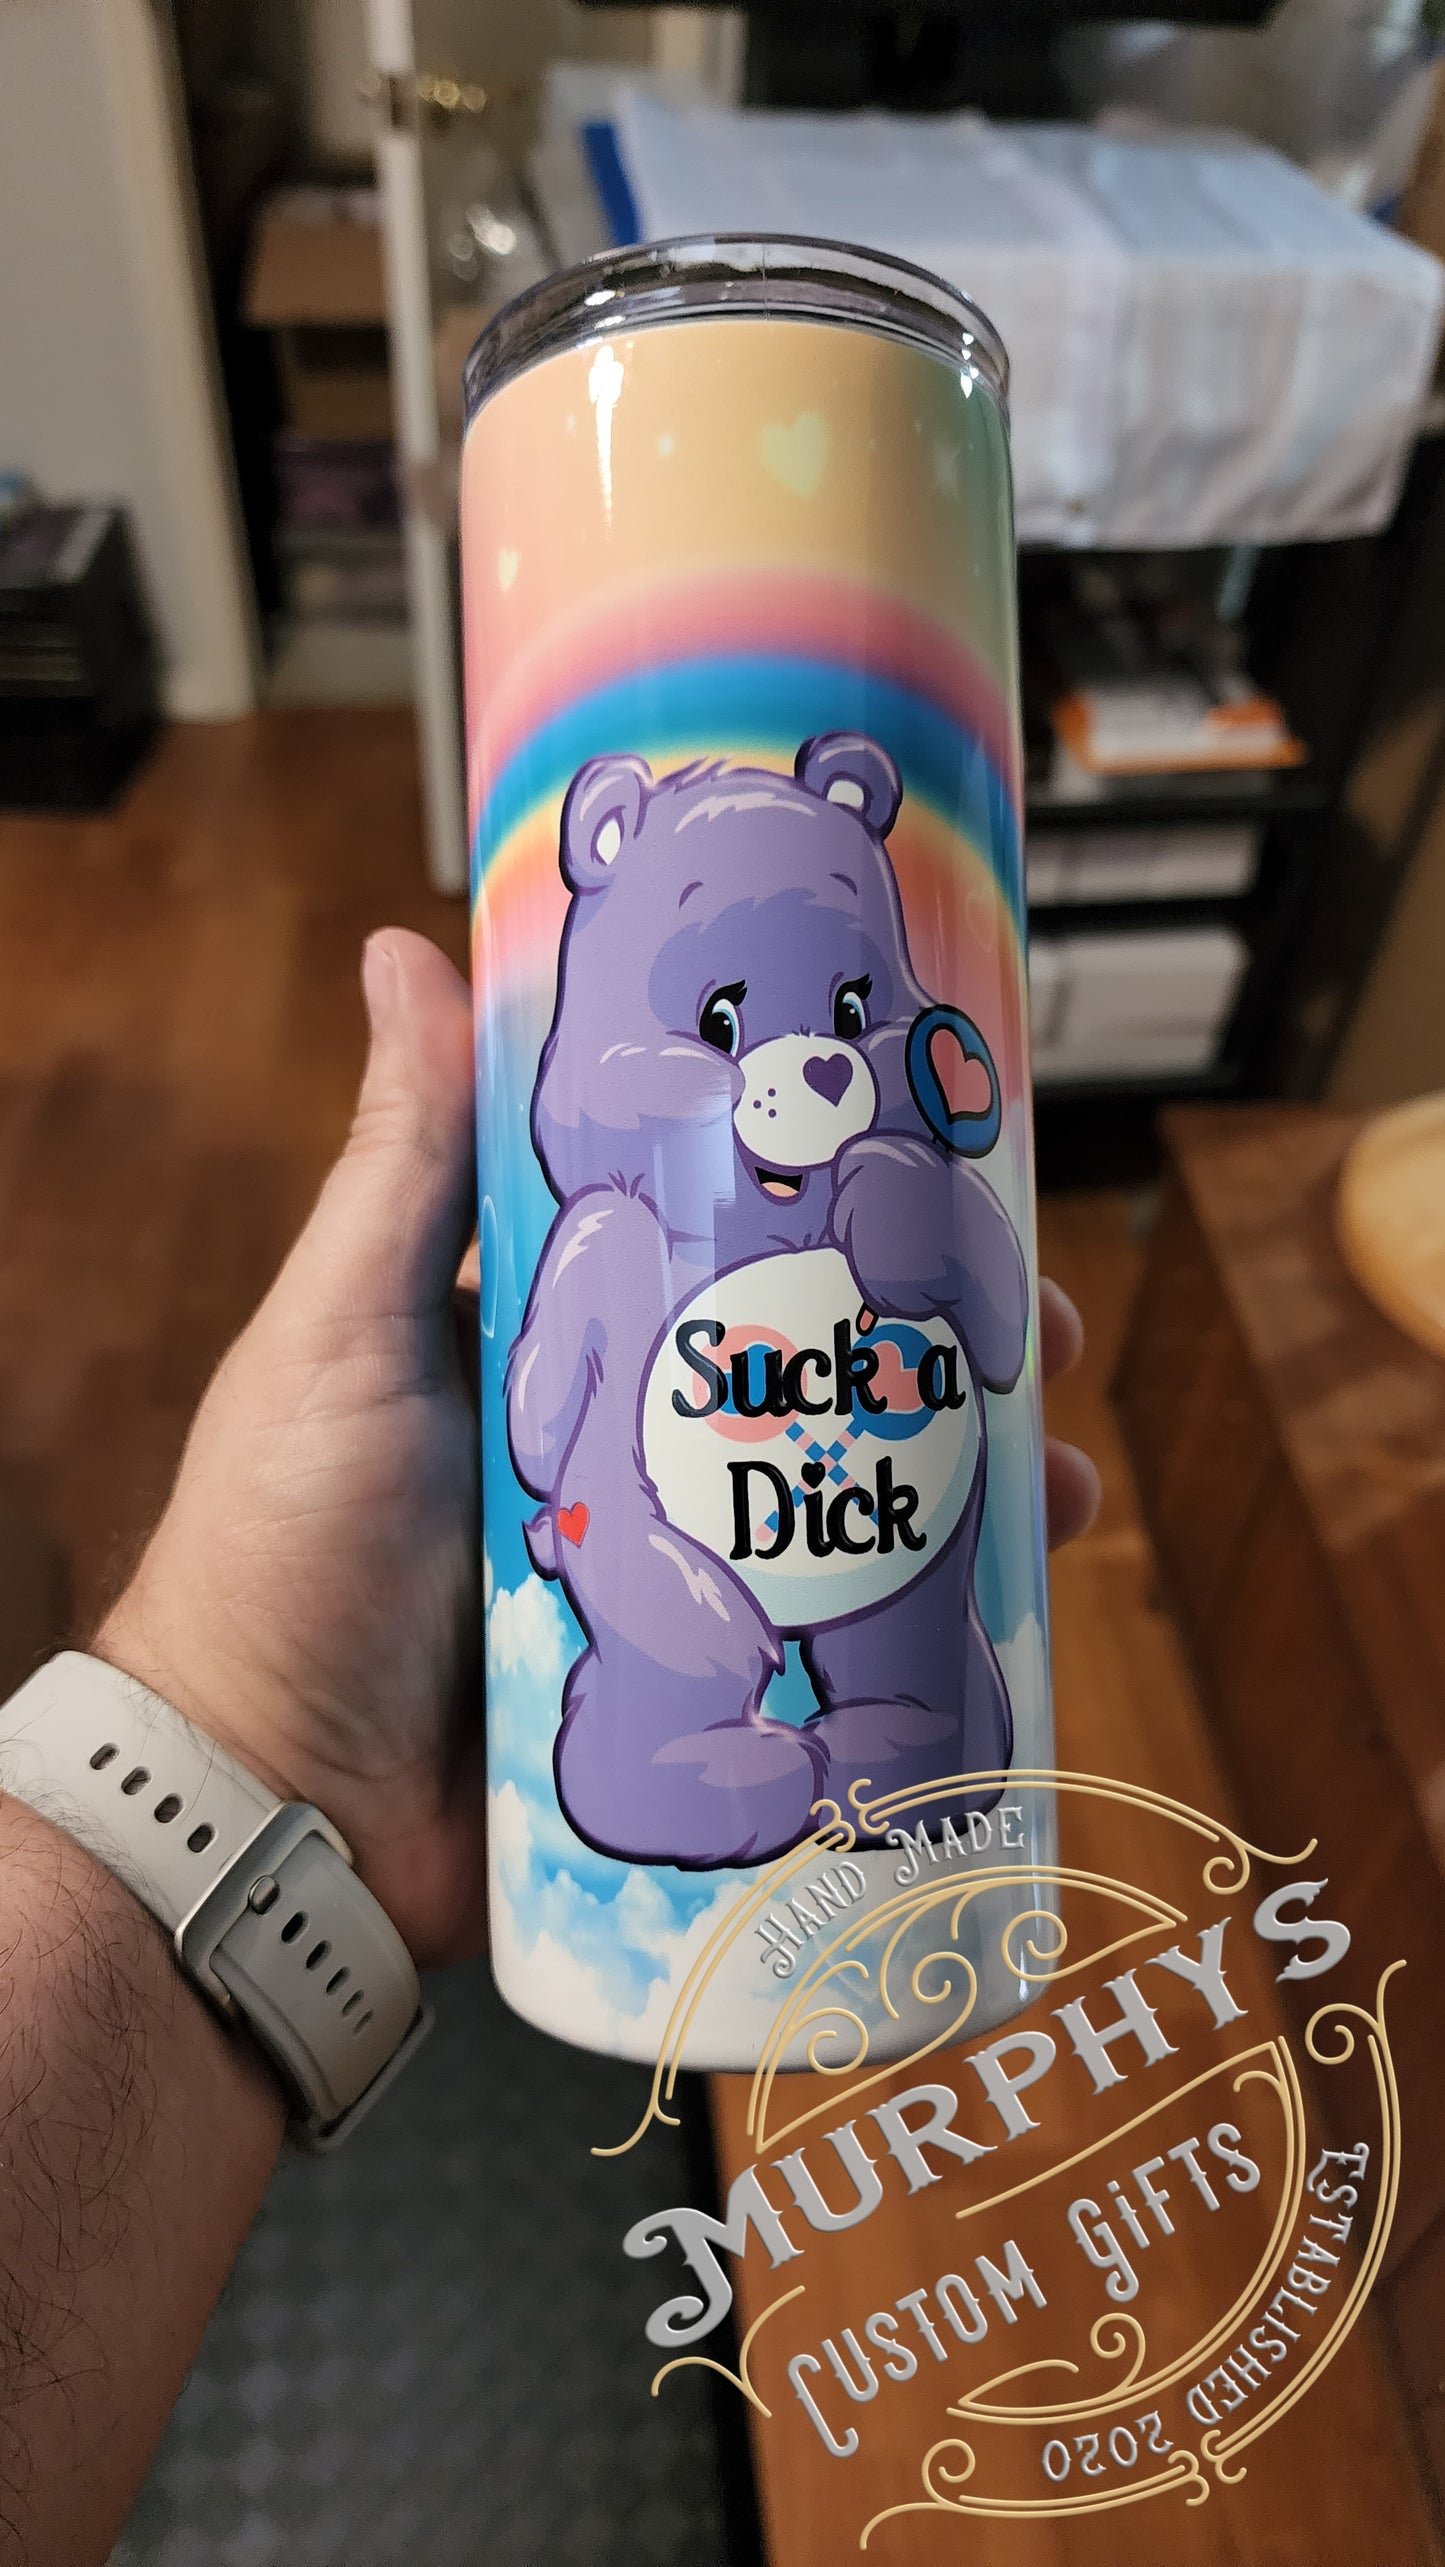 Bad Bear - Suck A D